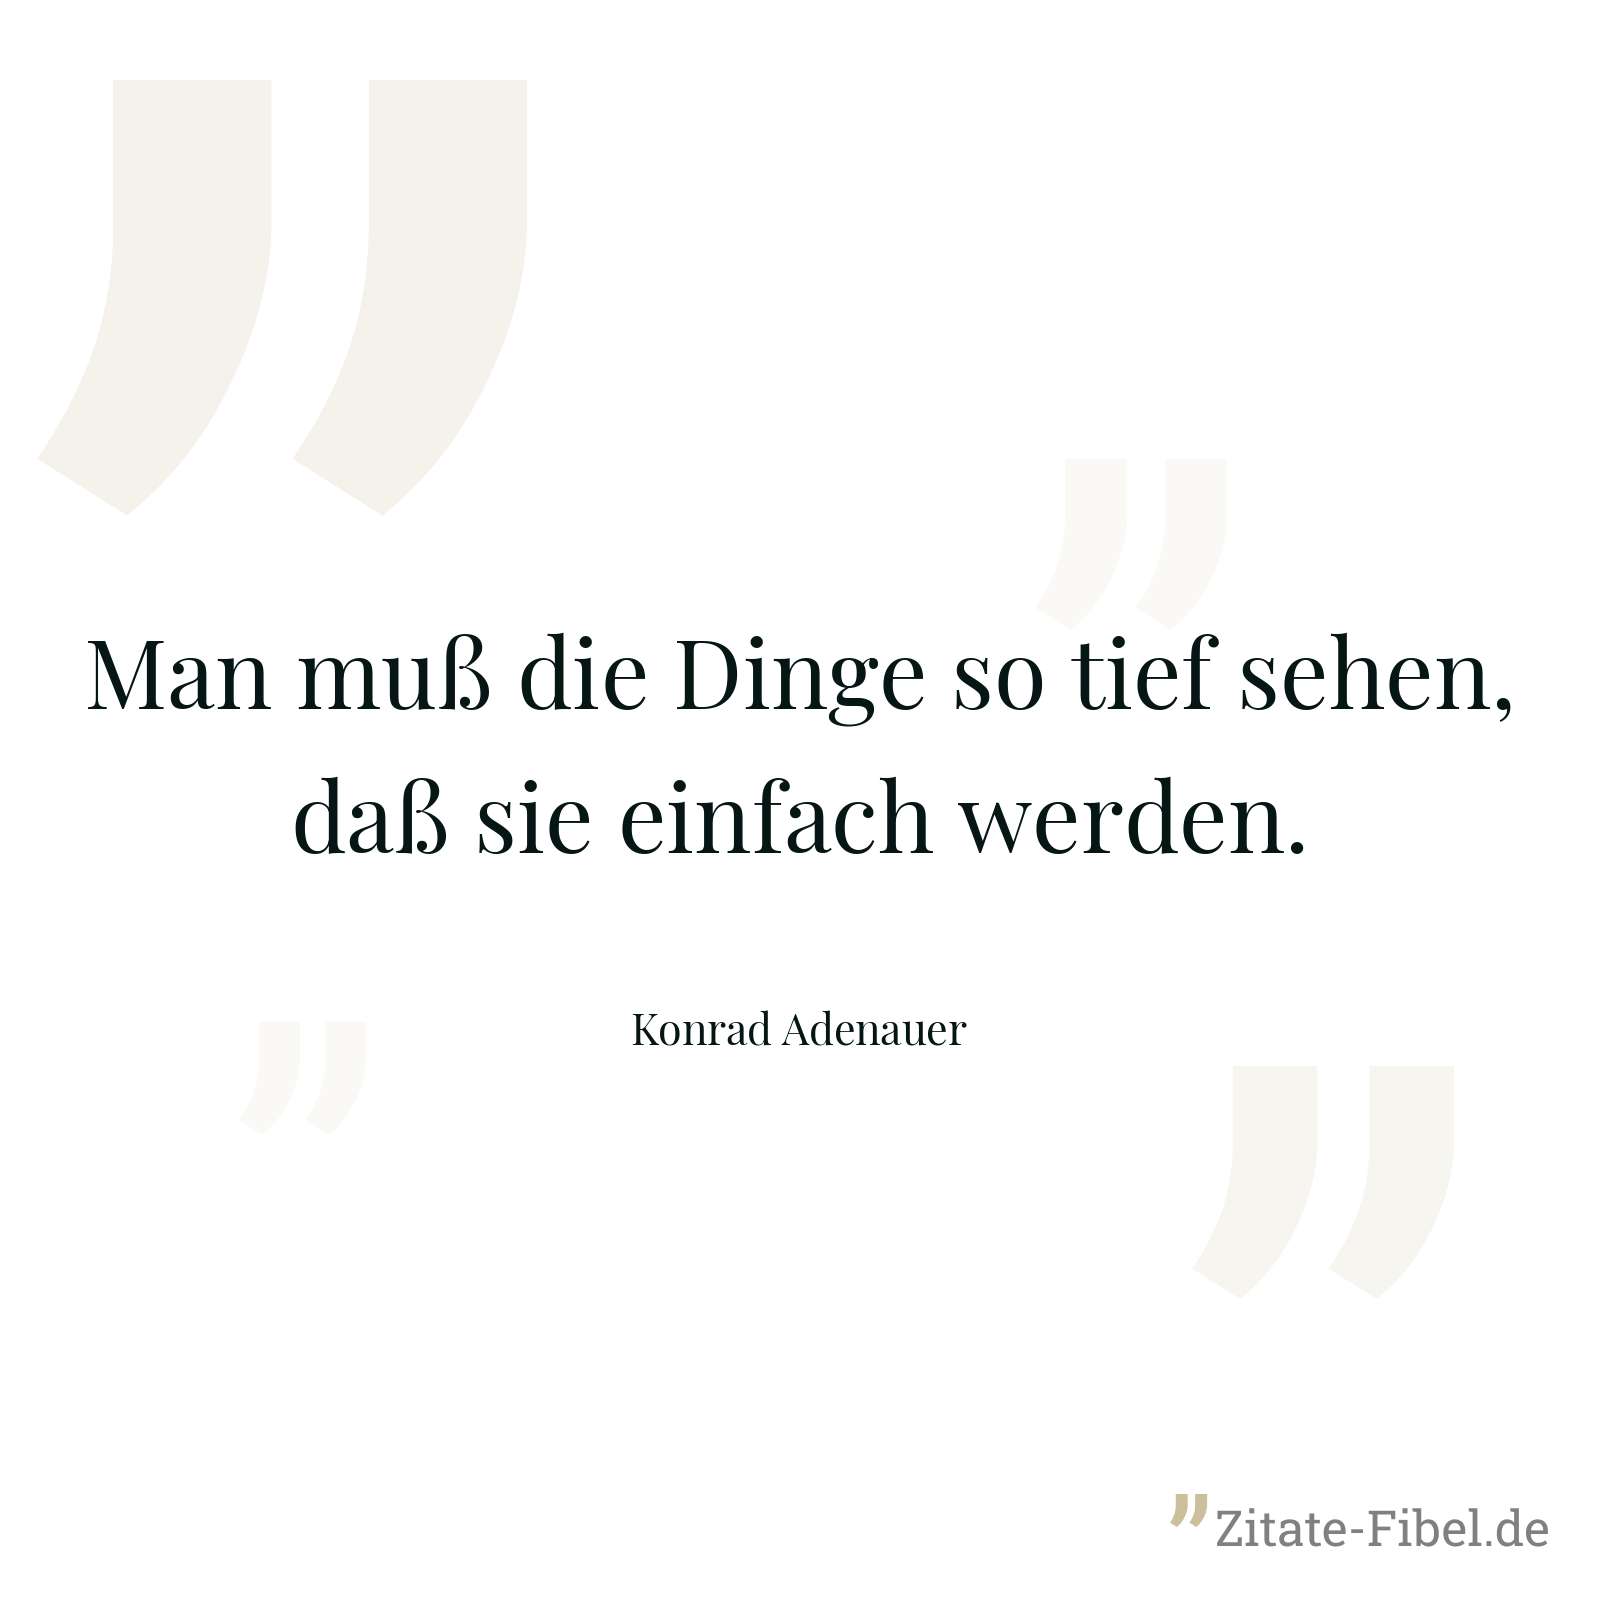 Man muß die Dinge so tief sehen, daß sie einfach werden. - Konrad Adenauer